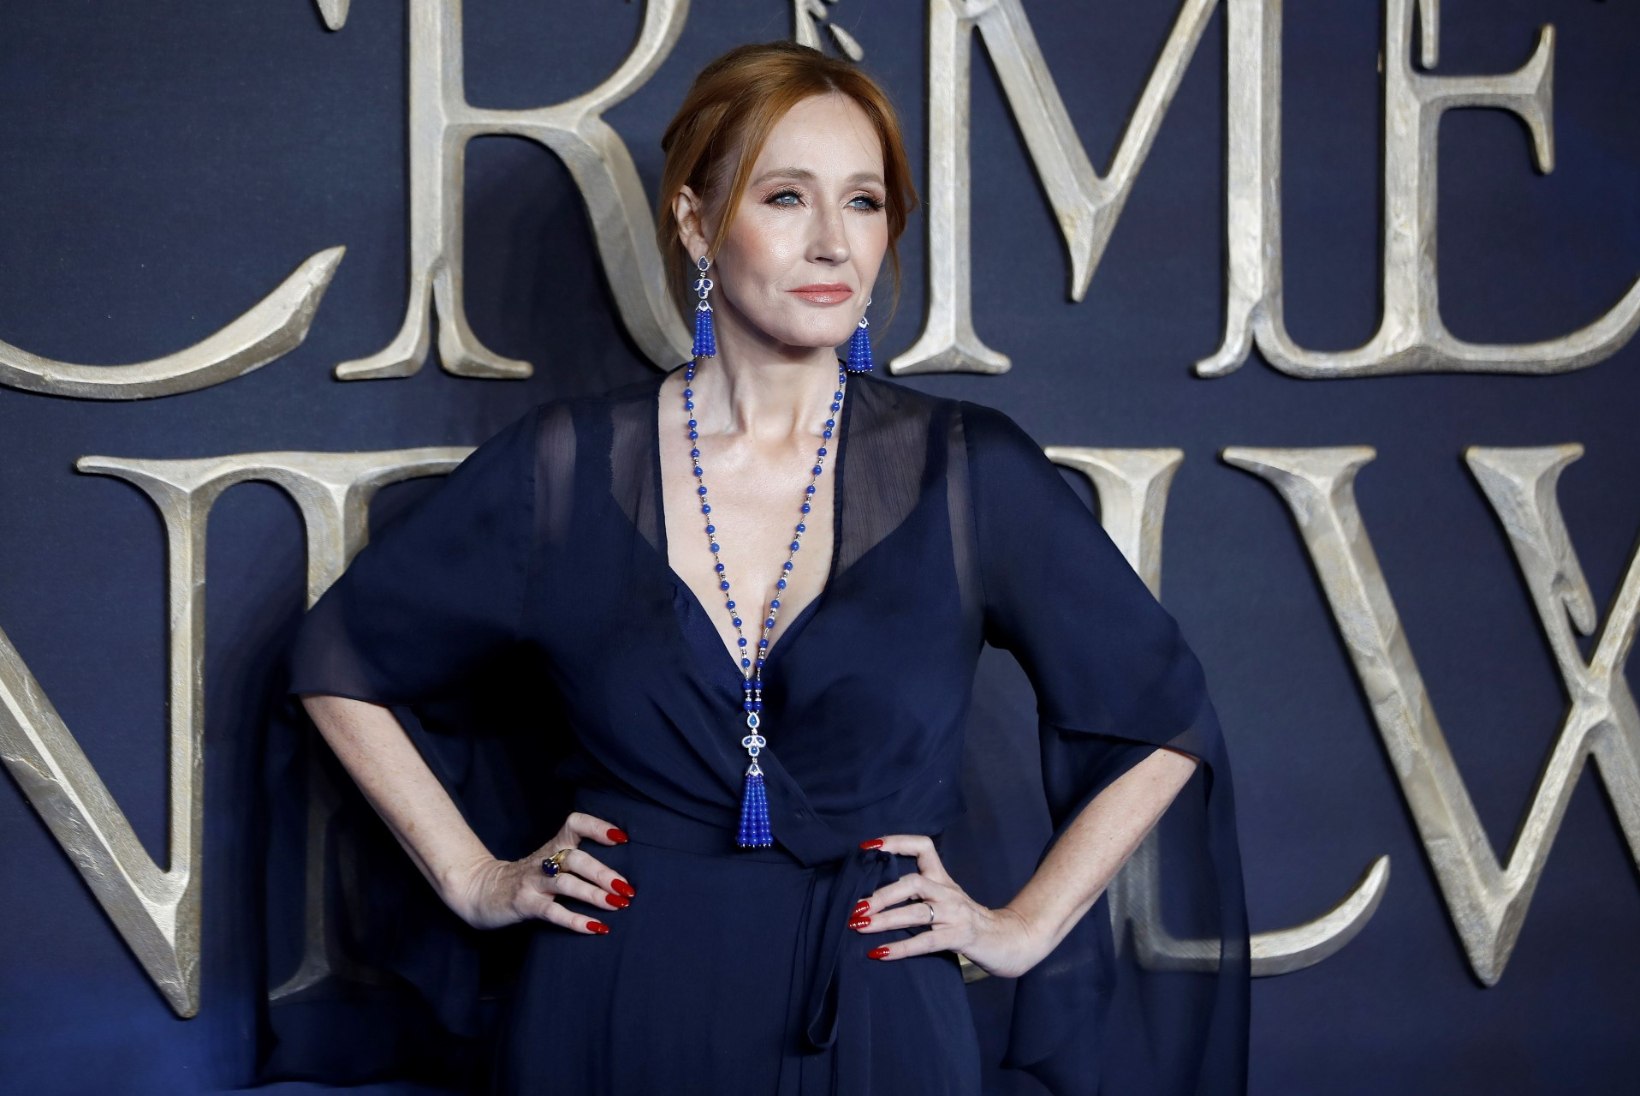 Eksabikaasa tunnistab J. K. Rowlingu löömist, kuid ei kahetse midagi